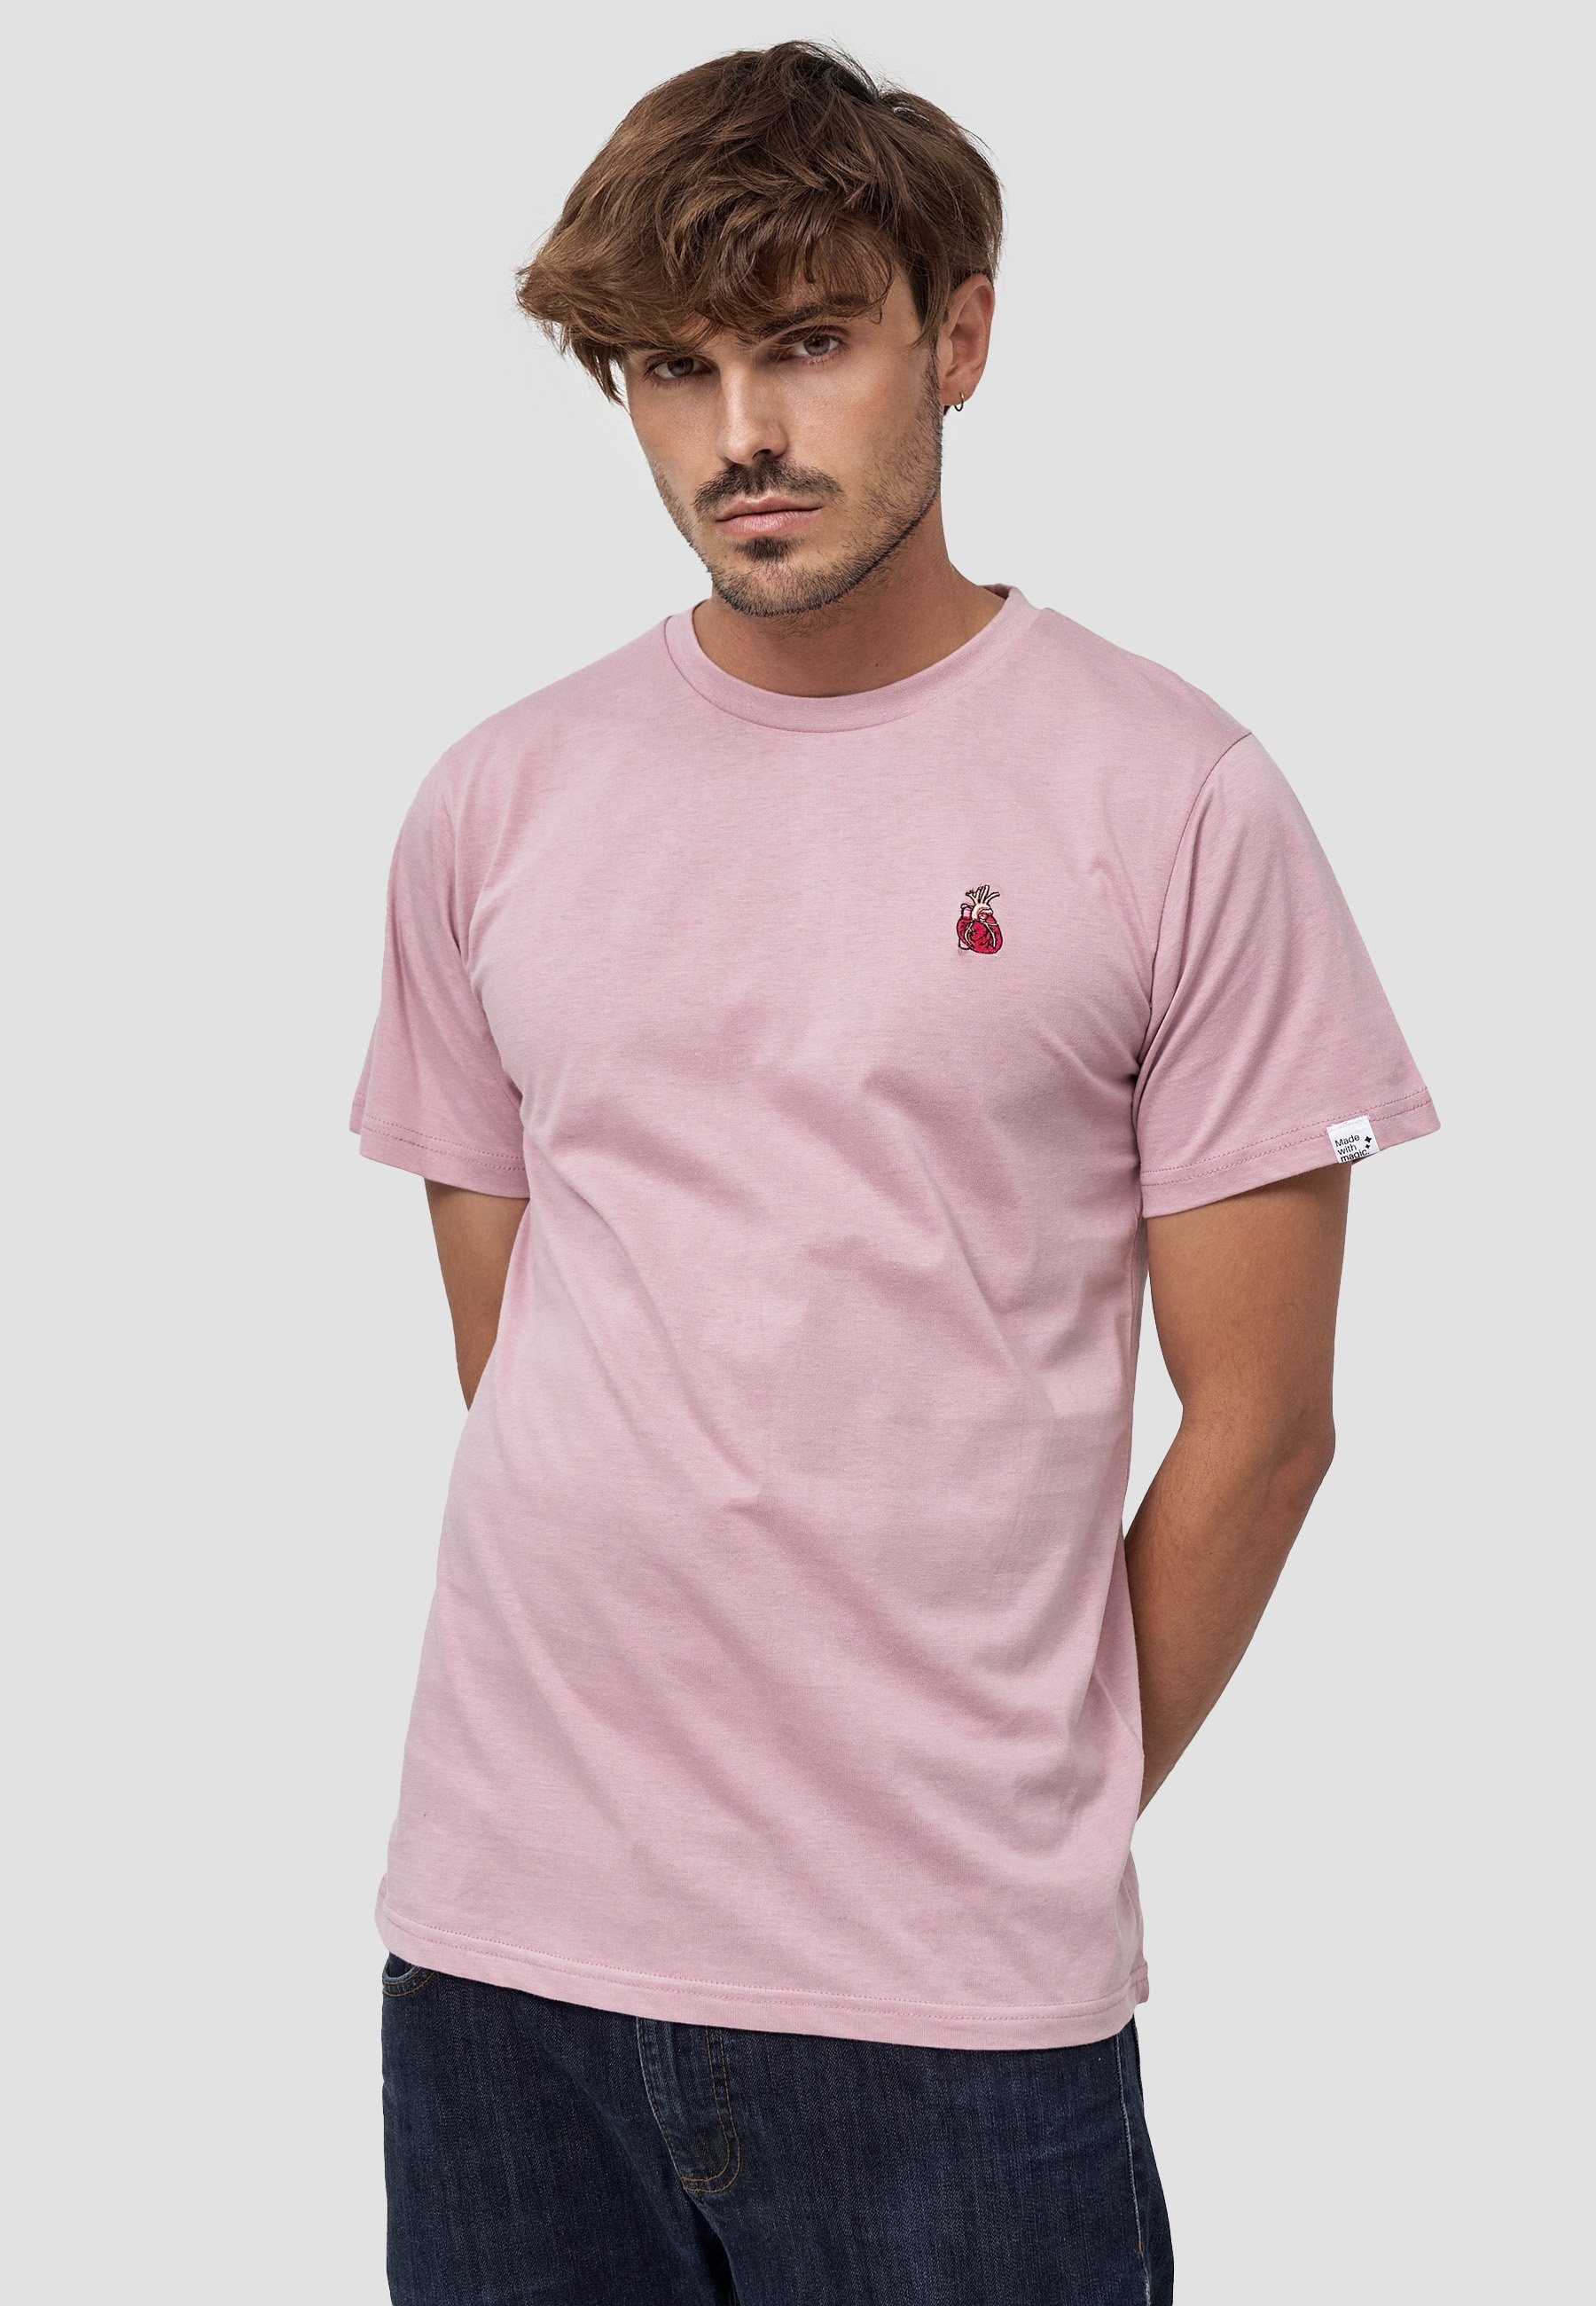 MIKON T-Shirt Herz GOTS zertifizierte Bio-Baumwolle Pink